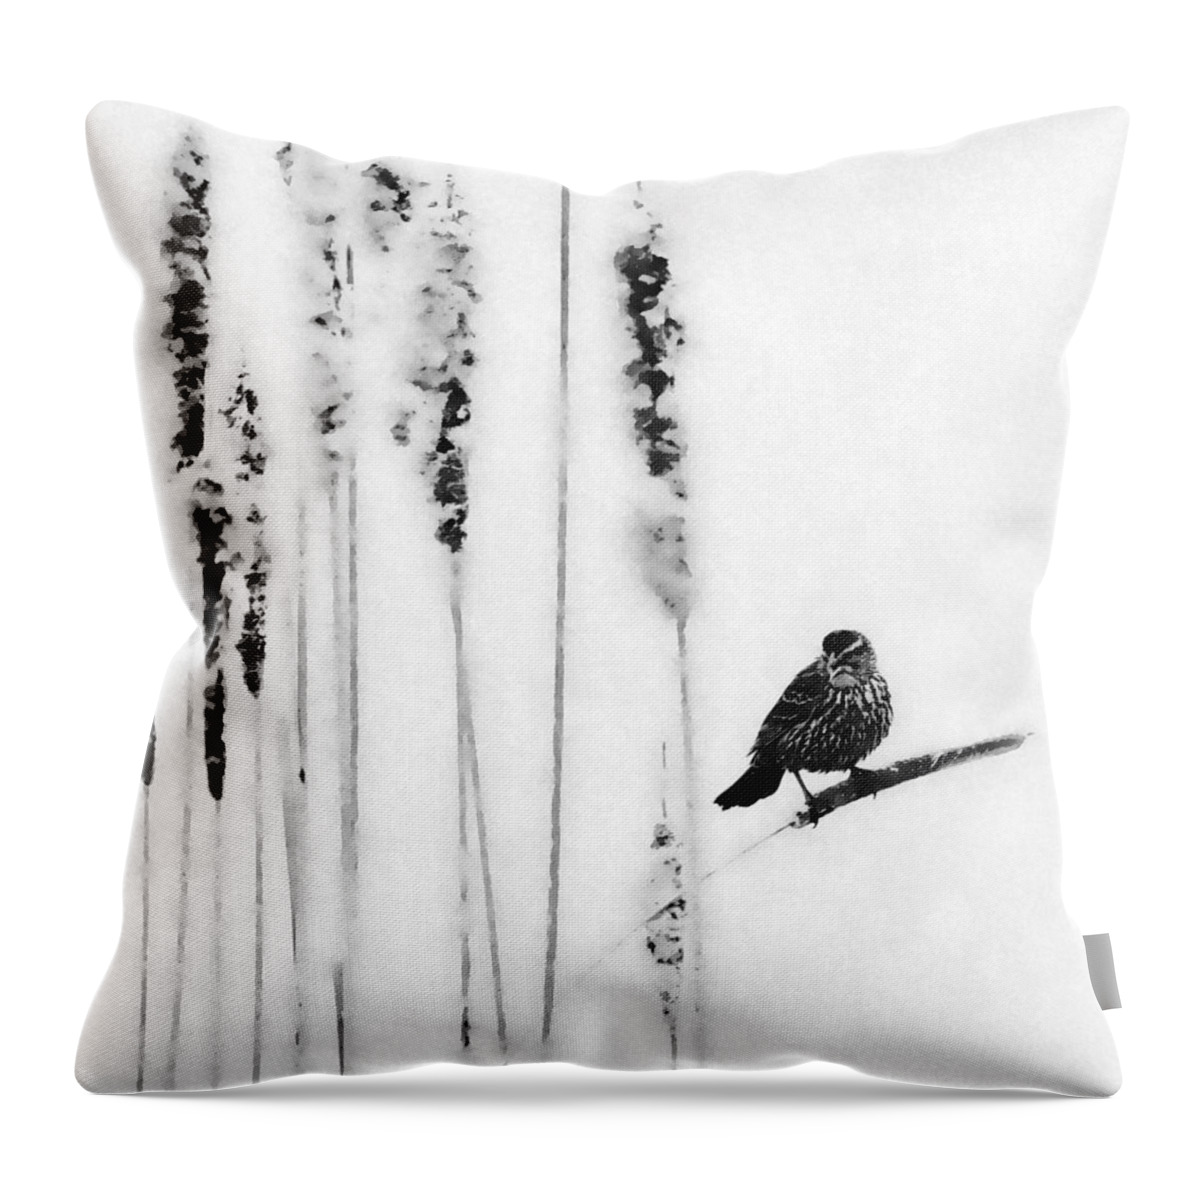 Song Bird Throw Pillow featuring the photograph Song Bird #1 by Andrea Kollo